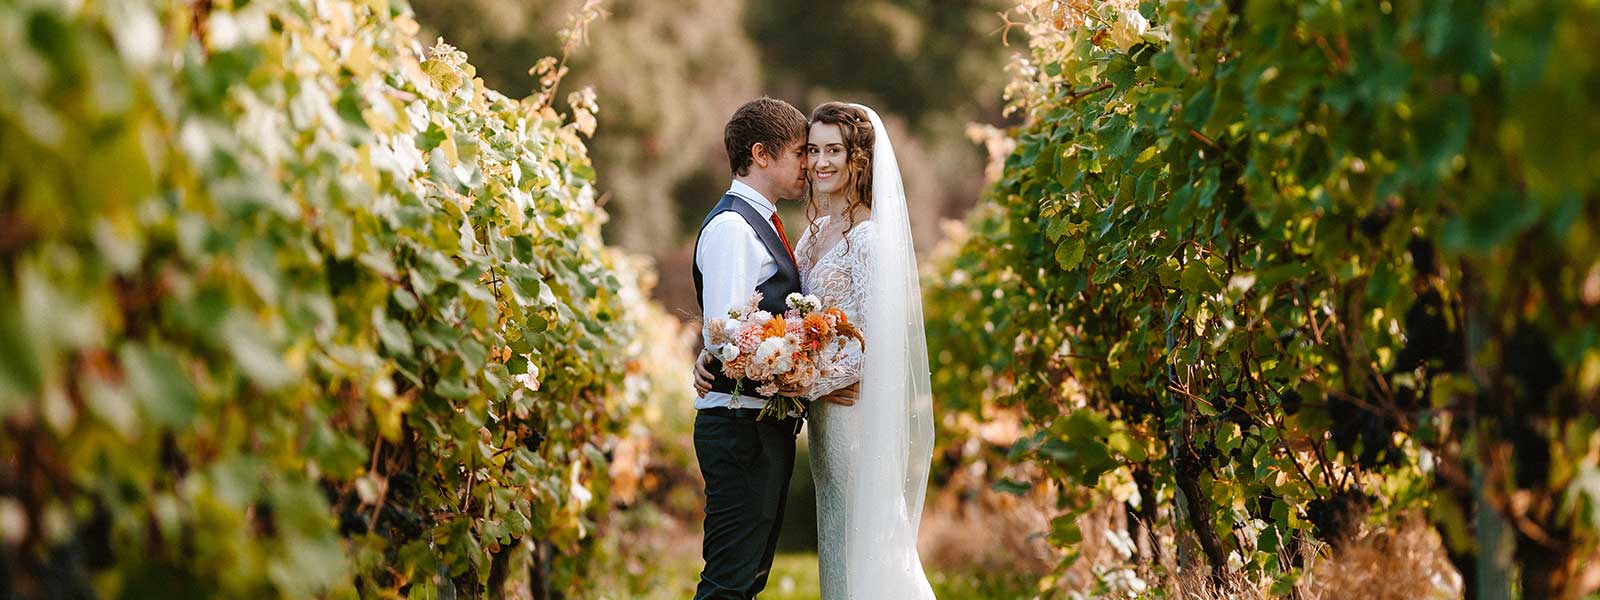 Autumn Barn Wedding – Chelcie & Carl